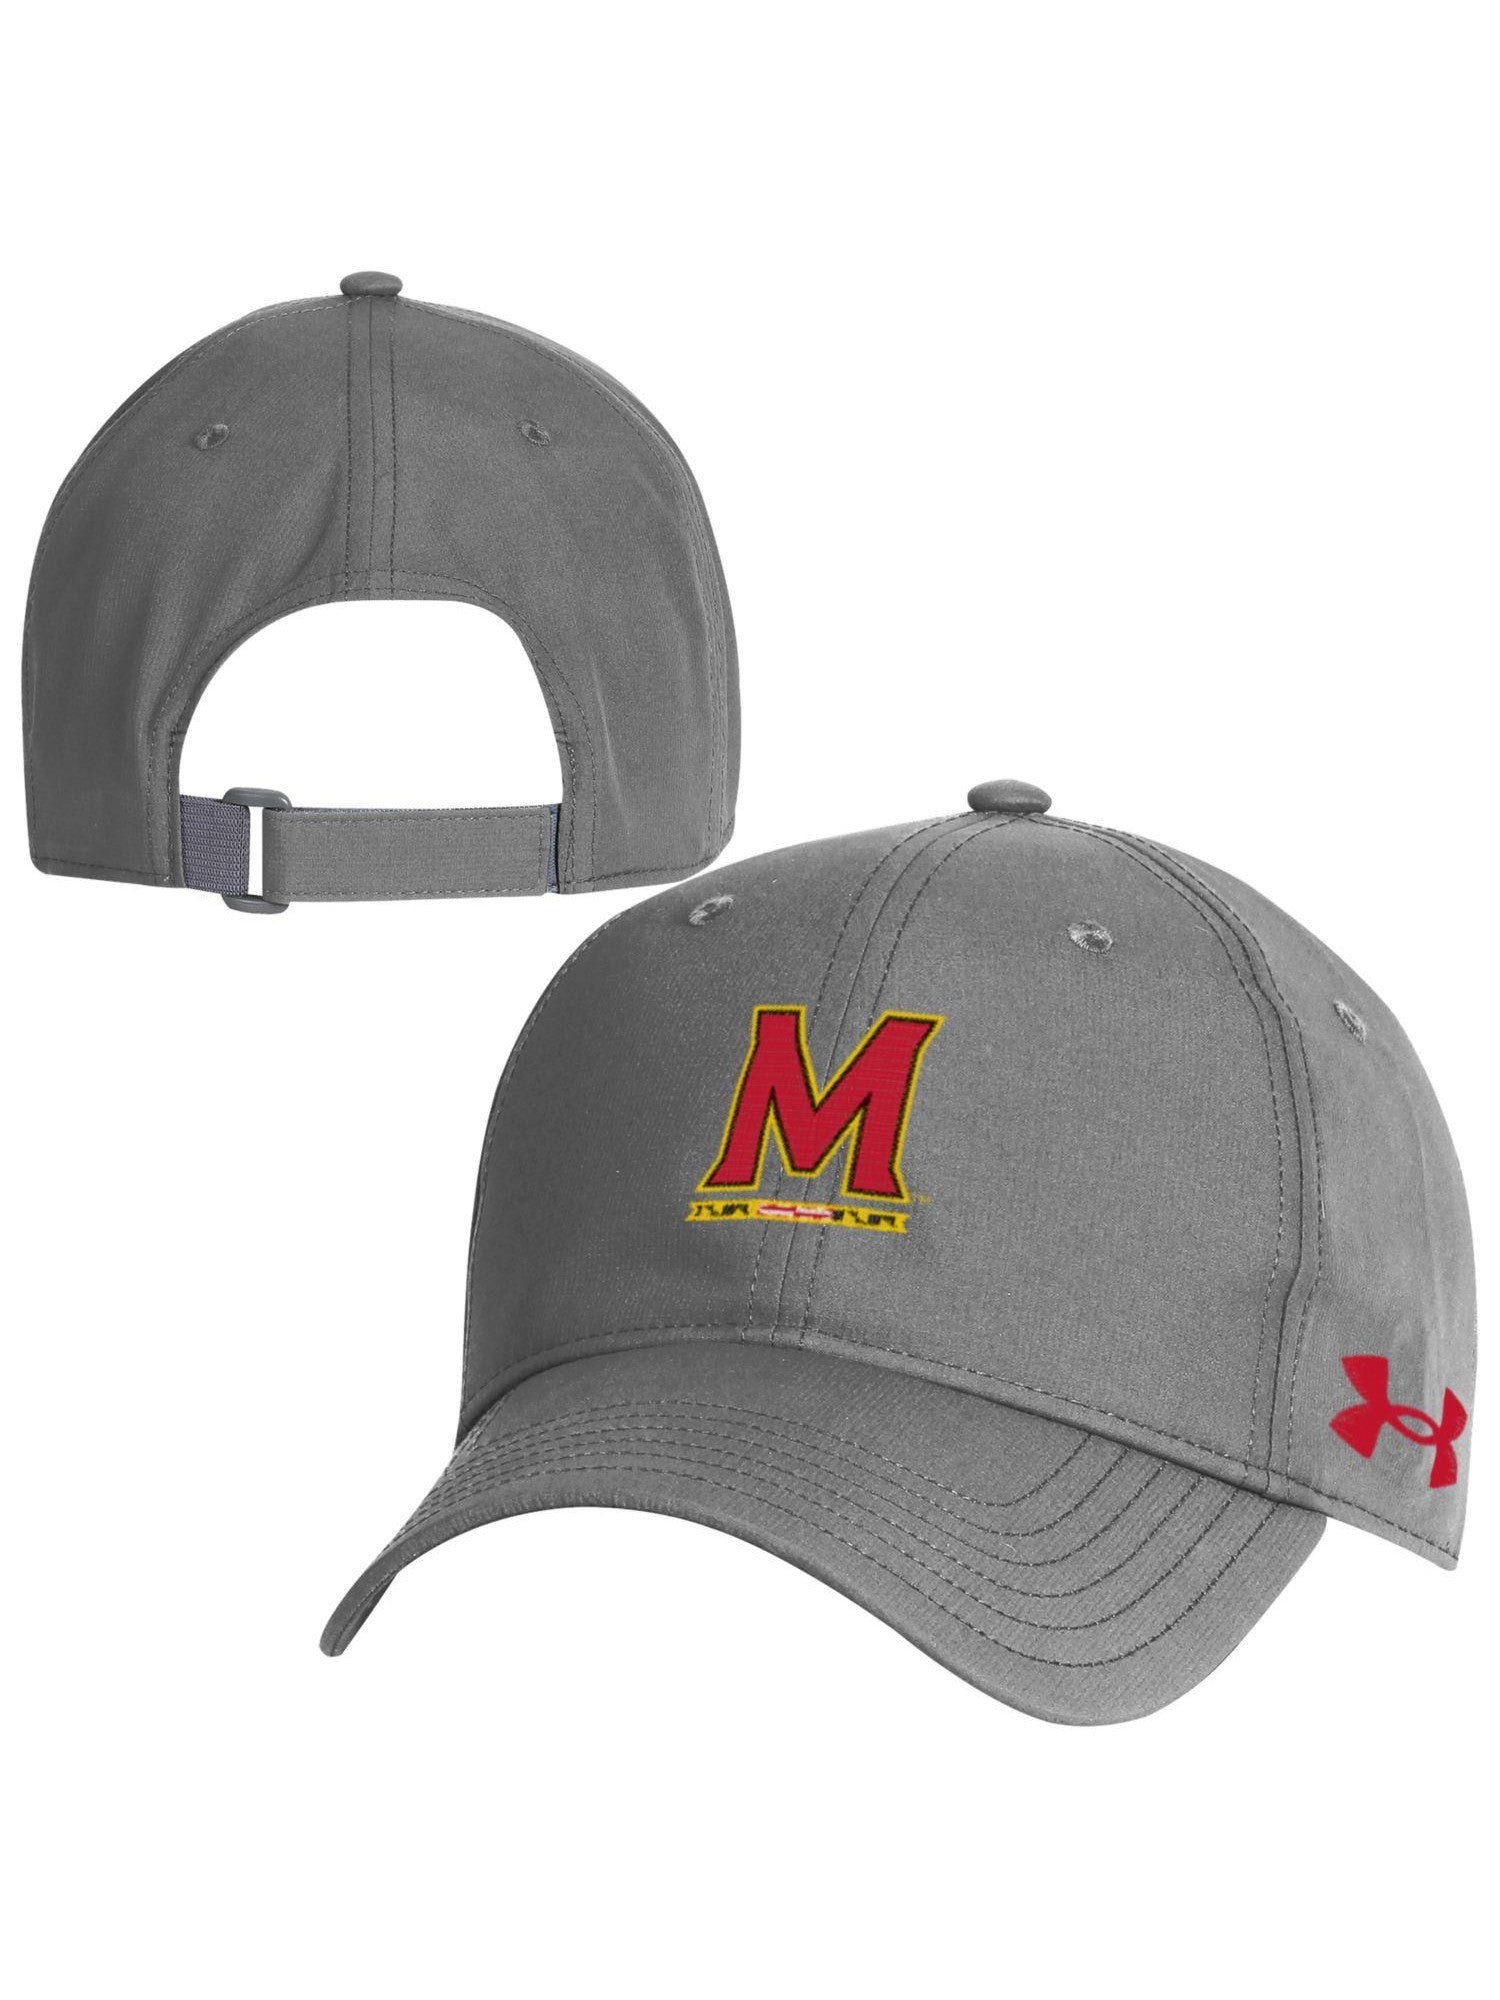 Cap Under Maryland University Maryland Armor Gifts of Baseball – (Grey)